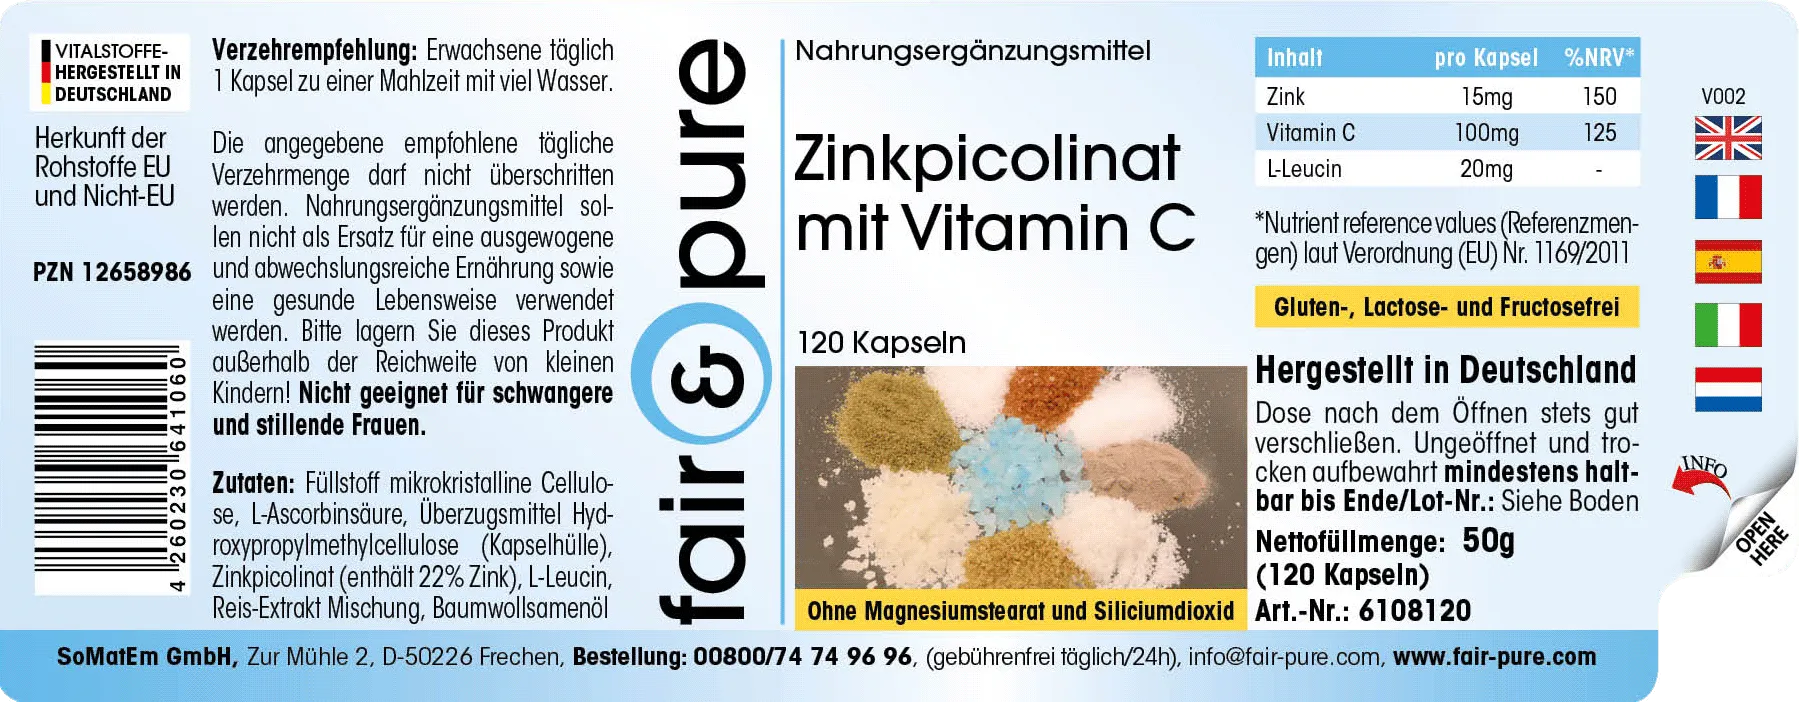 Zink 15mg met Vitamine C